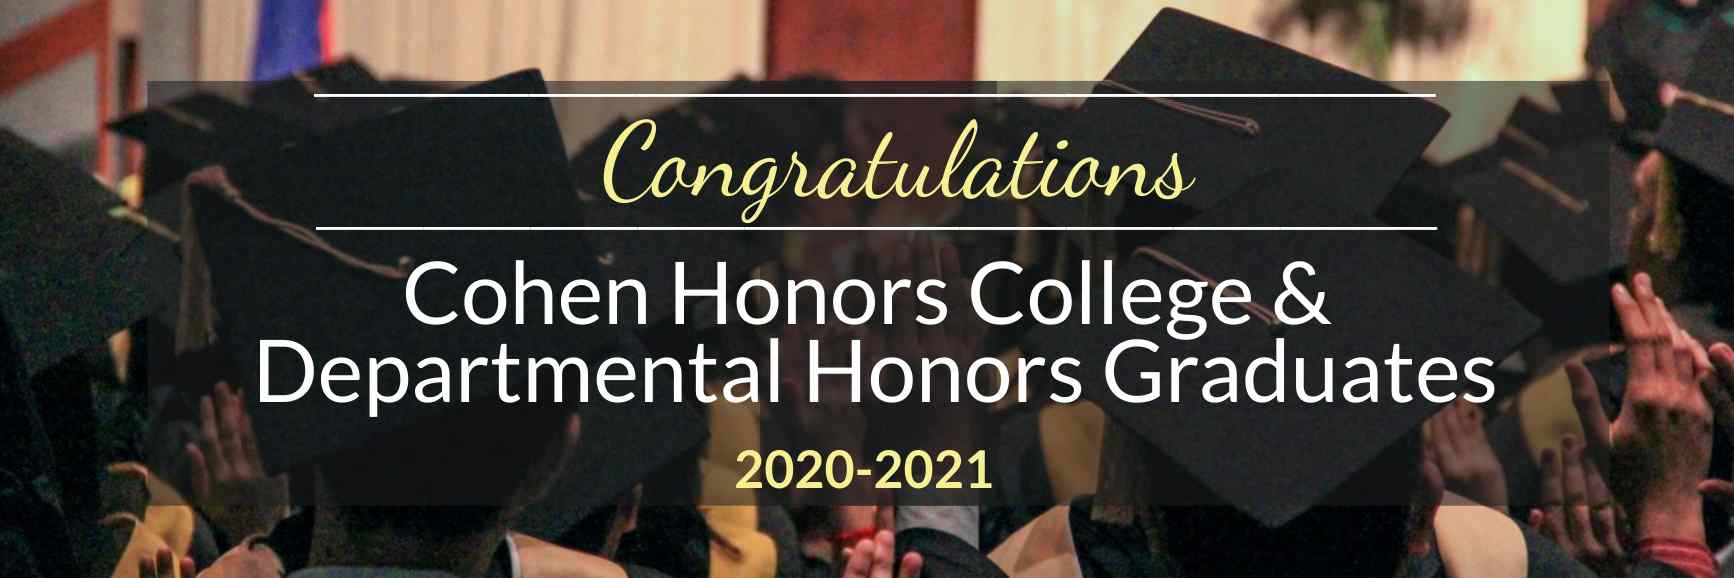 Congratulations Honors Graduates